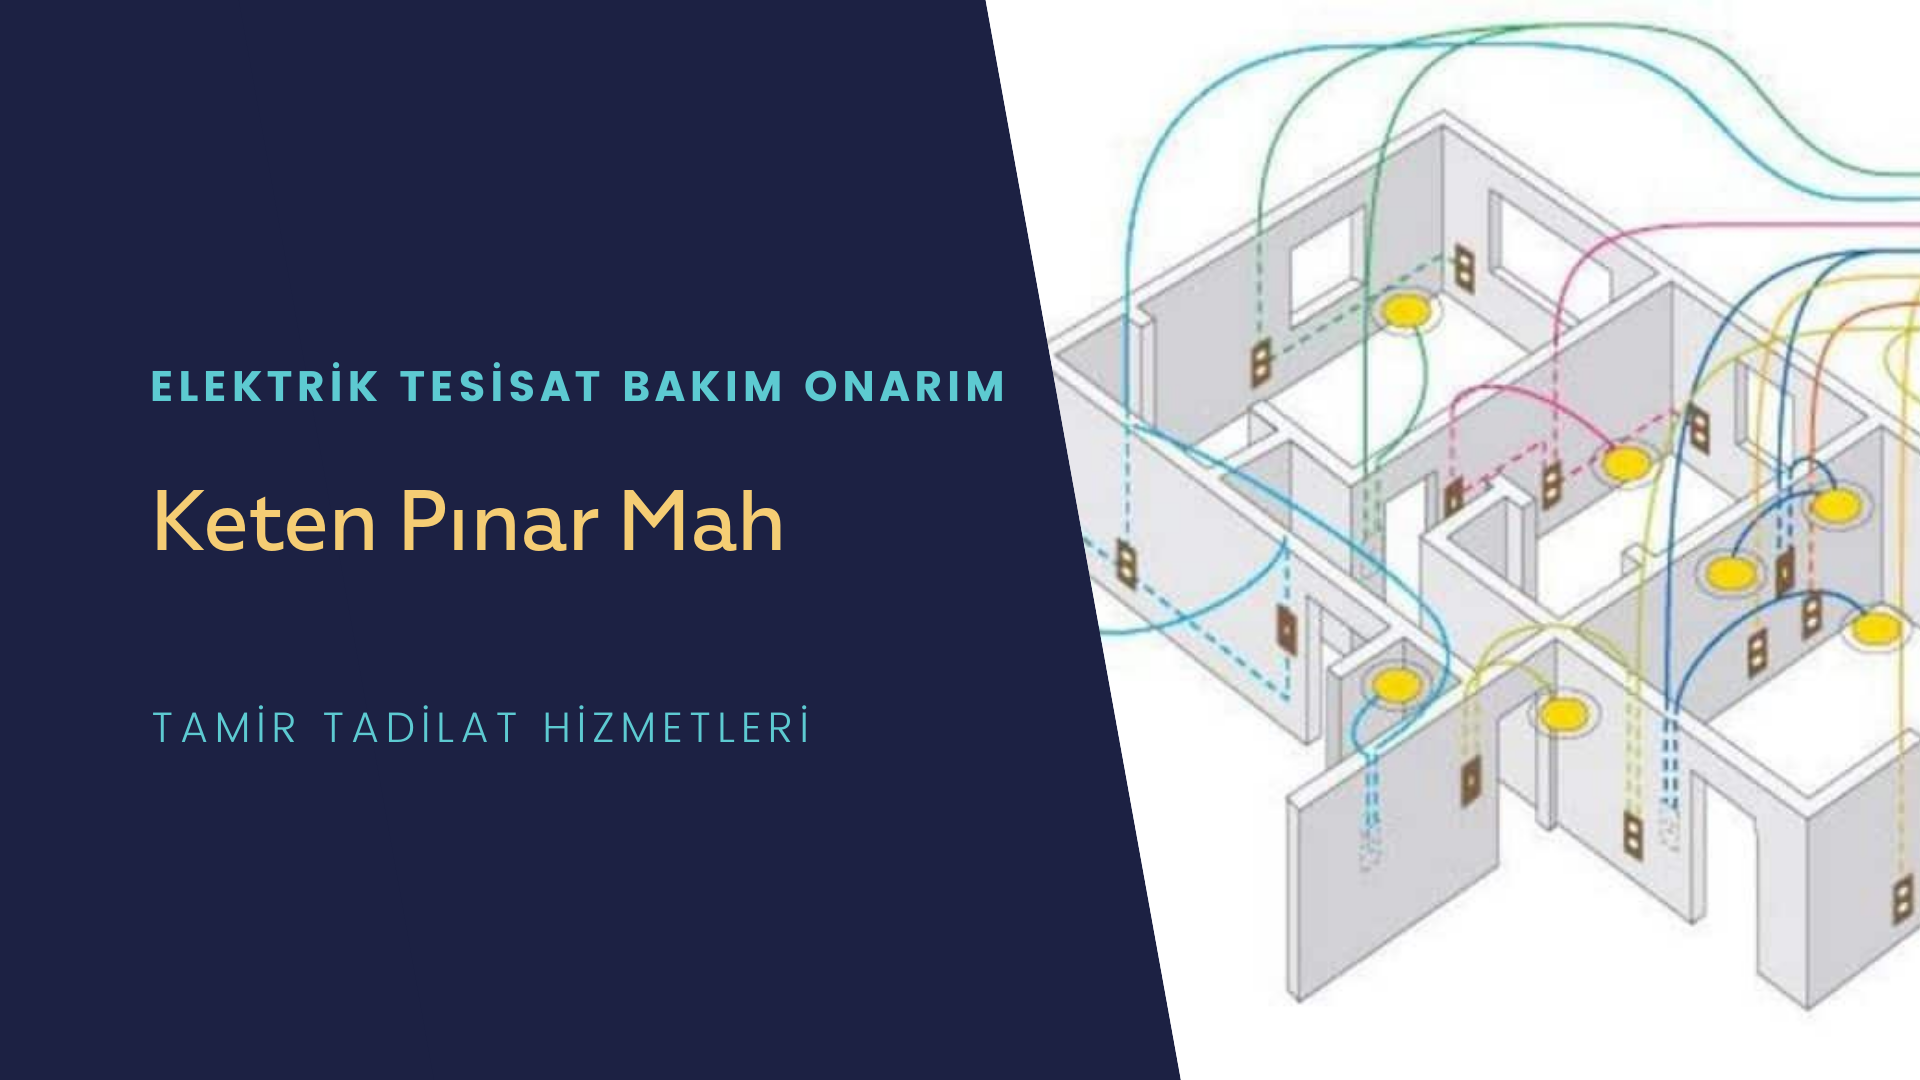 Keten Pınar Mah  elektrik tesisatı ustalarımı arıyorsunuz doğru adrestenizi Keten Pınar Mah elektrik tesisatı ustalarımız 7/24 sizlere hizmet vermekten mutluluk duyar.